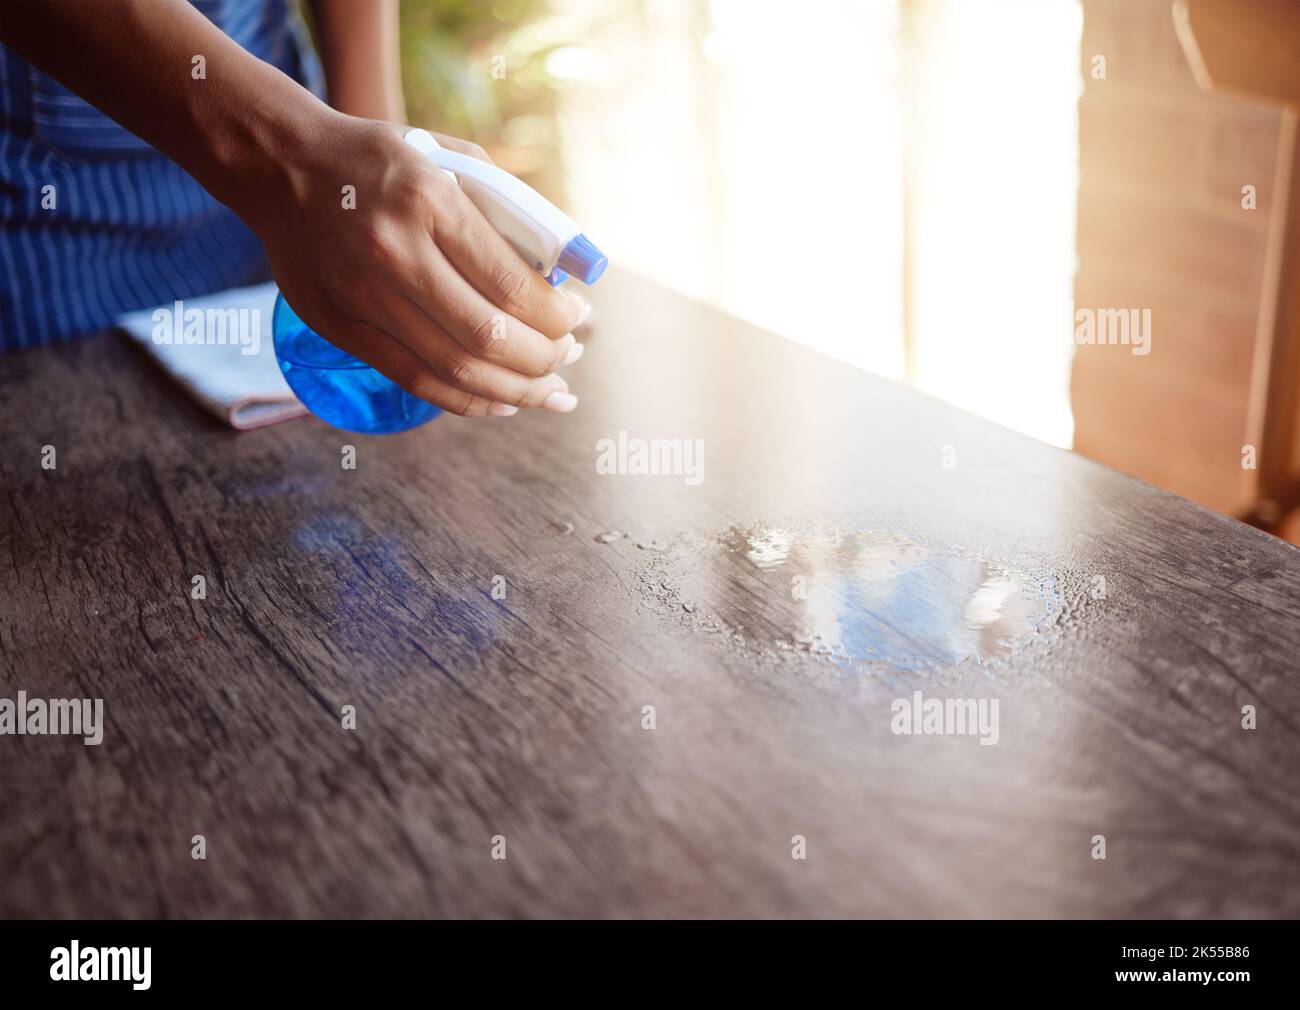 Nettoyer, laver les mains et vaporiser la table de nettoyage avec de l'assainisseur à la maison, au bureau ou au restaurant. Serveuse, serveur et bouteille avec produit chimique pour nettoyer la saleté, les bactéries Banque D'Images